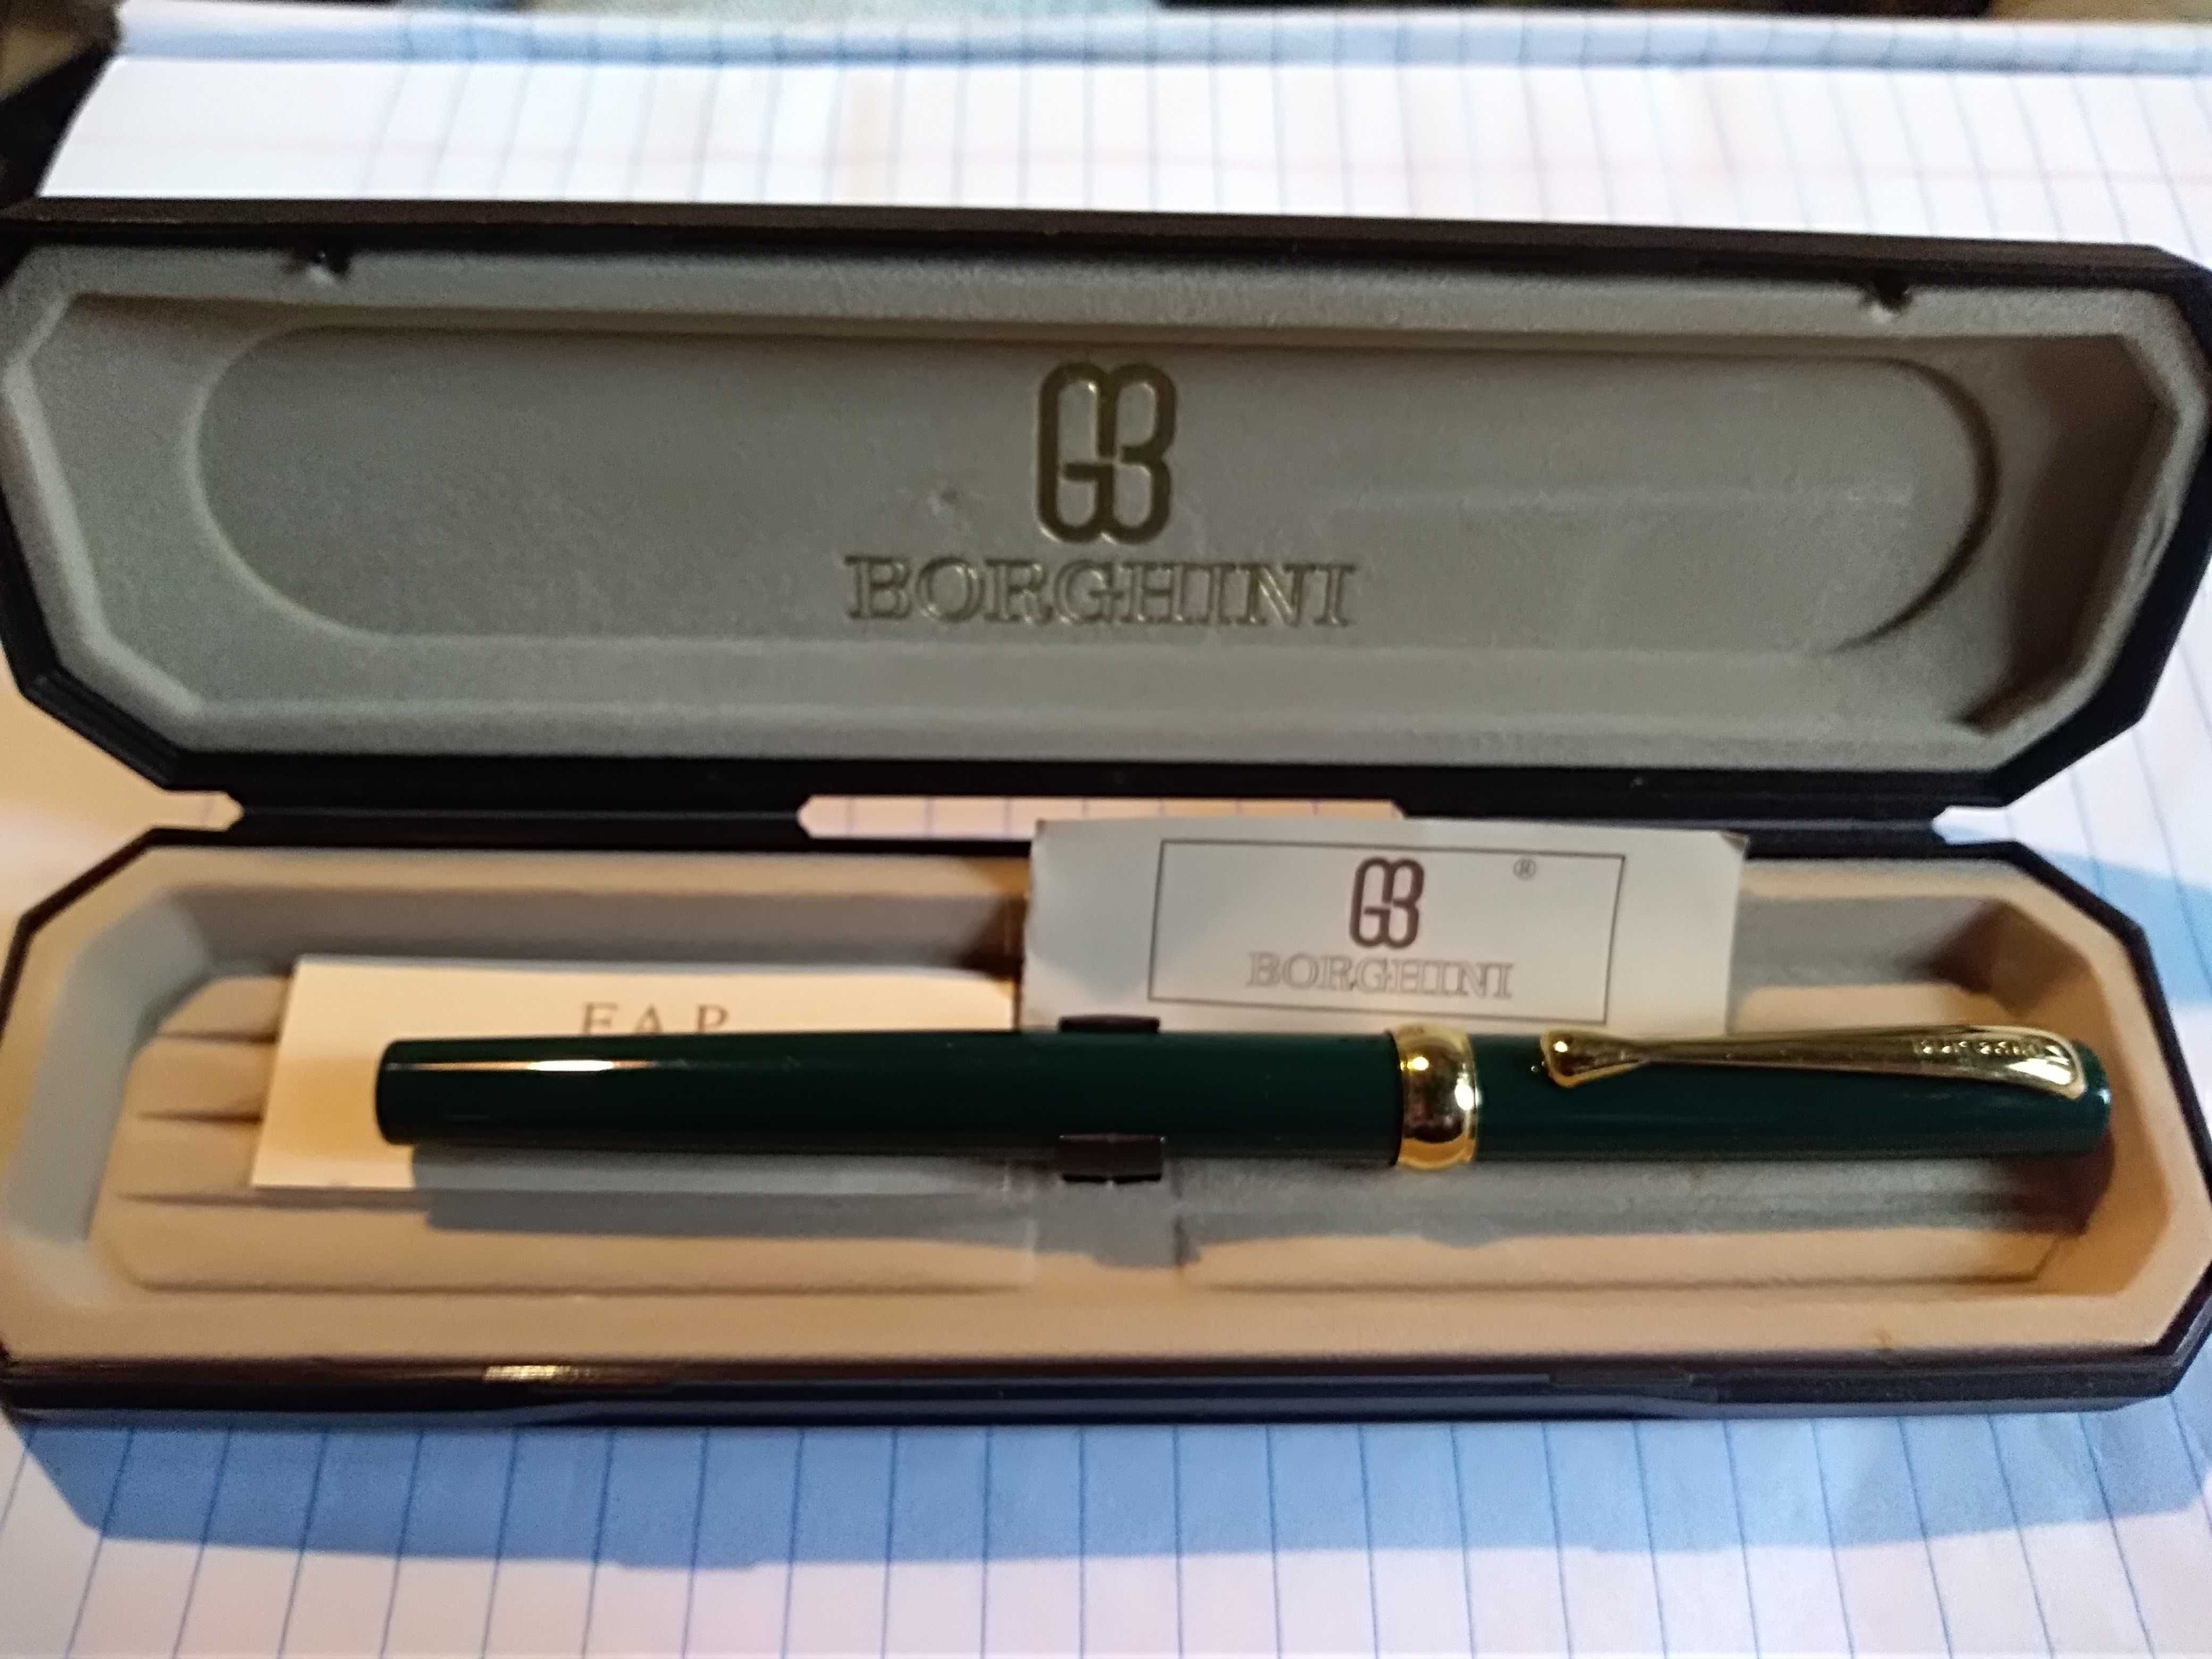 Duas canetas finas de marca italiana no estojo, uma com certificado